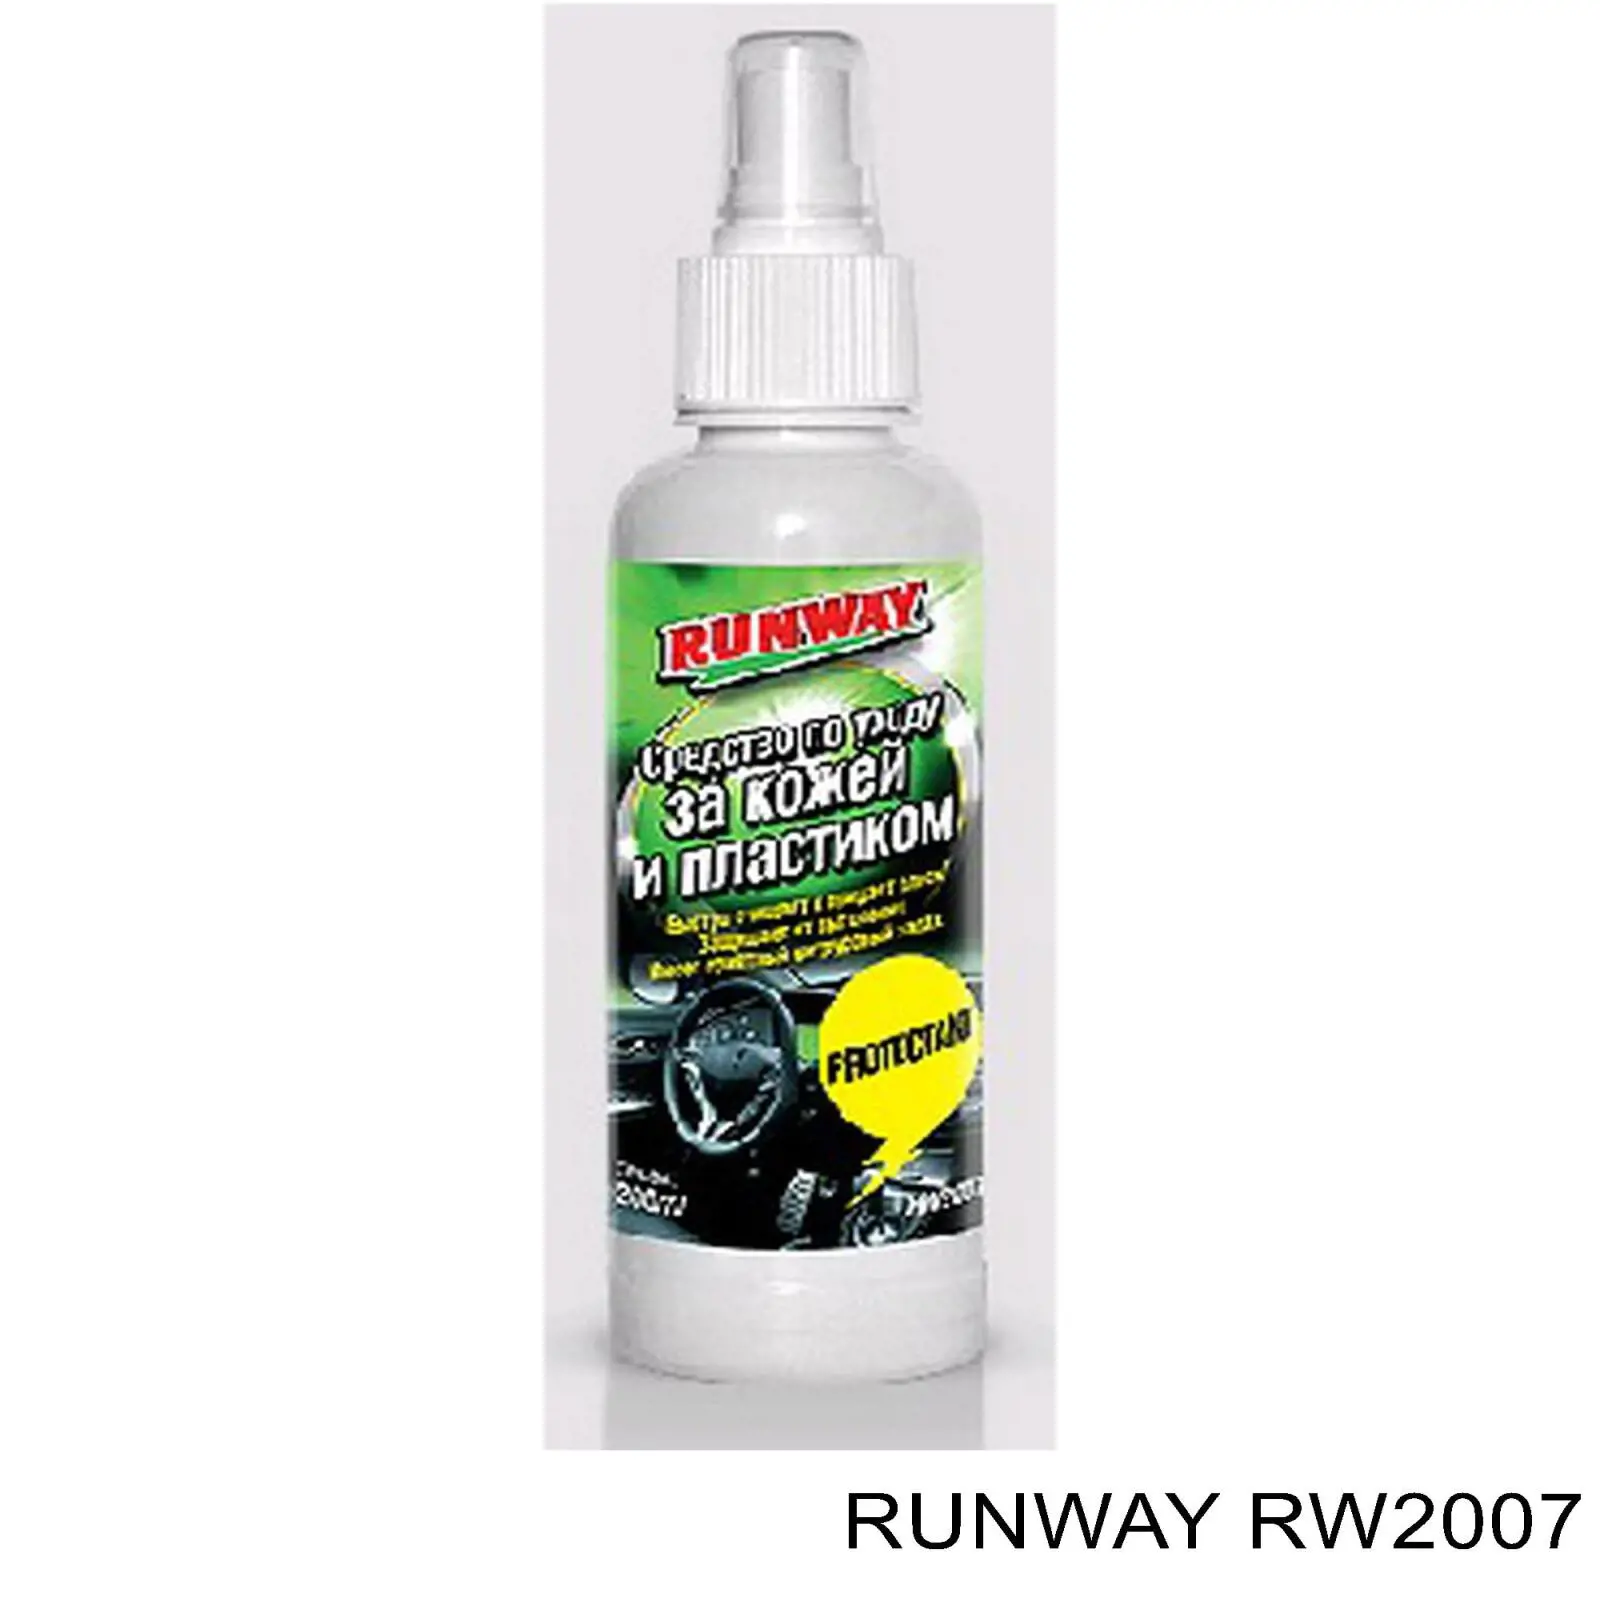 RW2007 Runway очиститель кожаной обивки салона Очиститель-кондиционер кожаной обивки салона, 0.2л